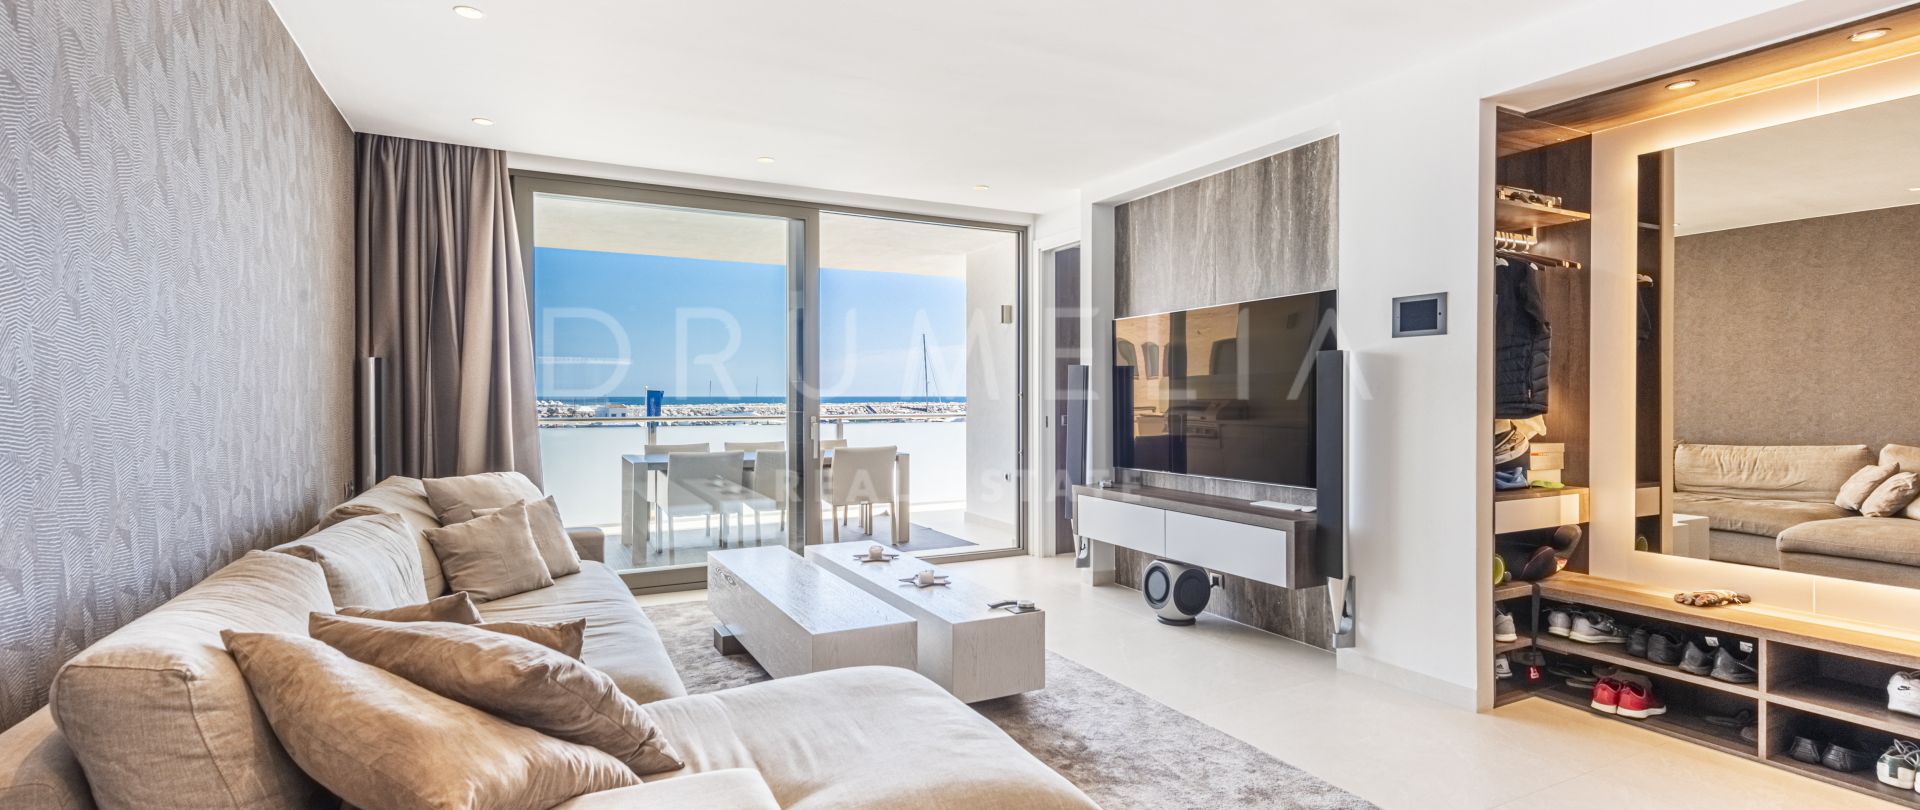 Uniek, chique, modern Hollywood-stijl appartement in het glorieuze Puerto Banus, Marbella